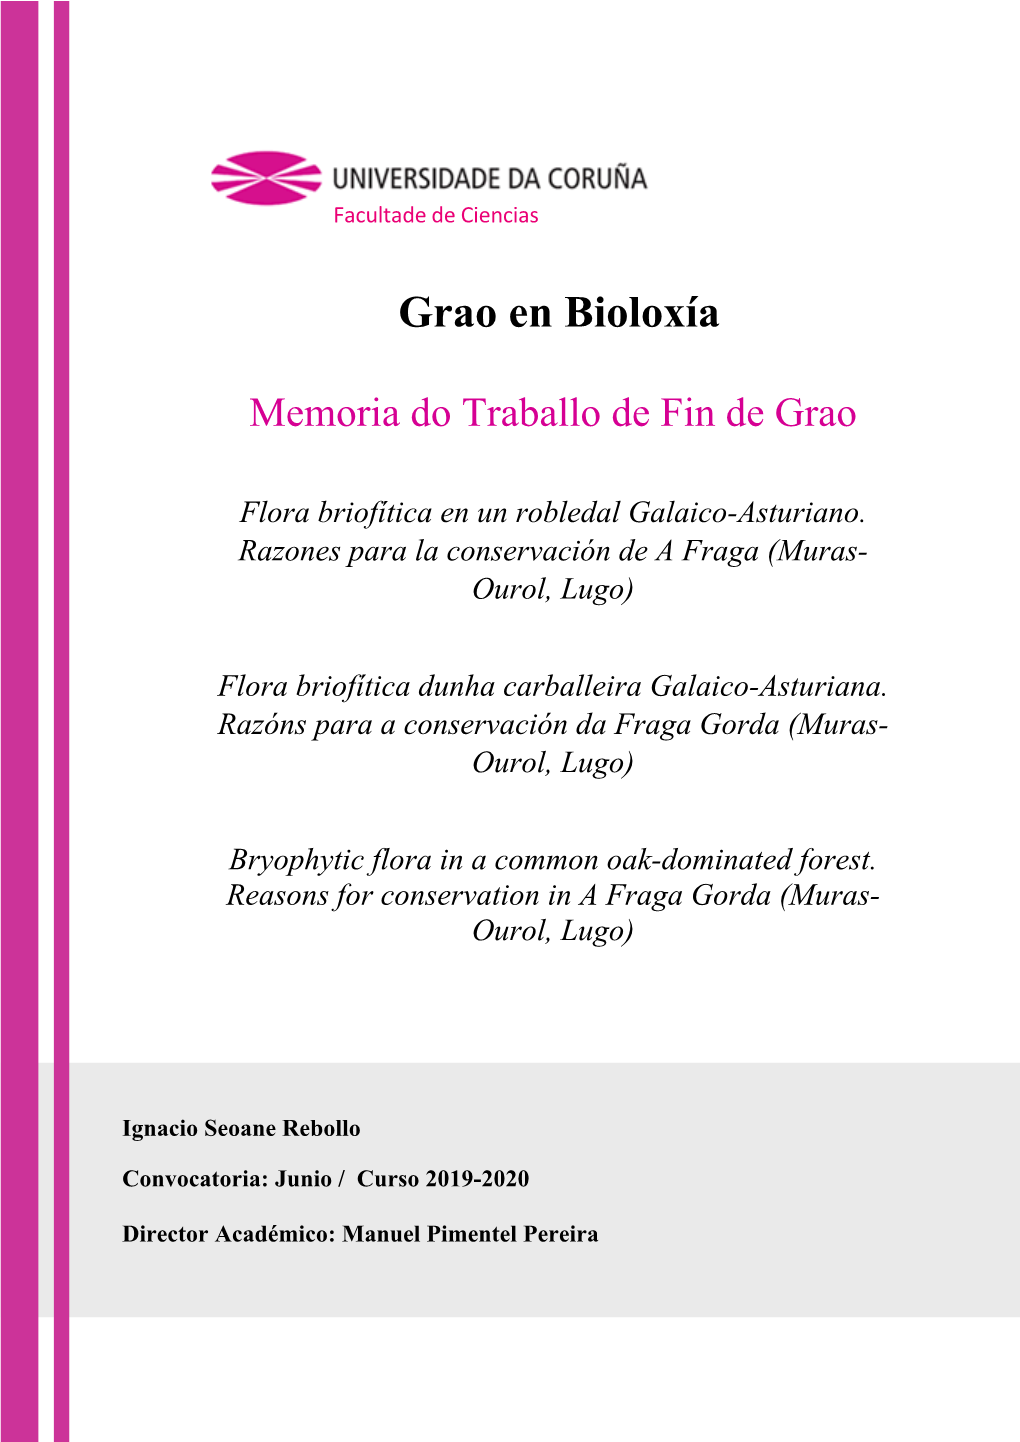 Flora Briofítica En Un Robledal Galaico-Asturiano. Razones Para La Conservación De a Fraga (Muras- Ourol, Lugo)